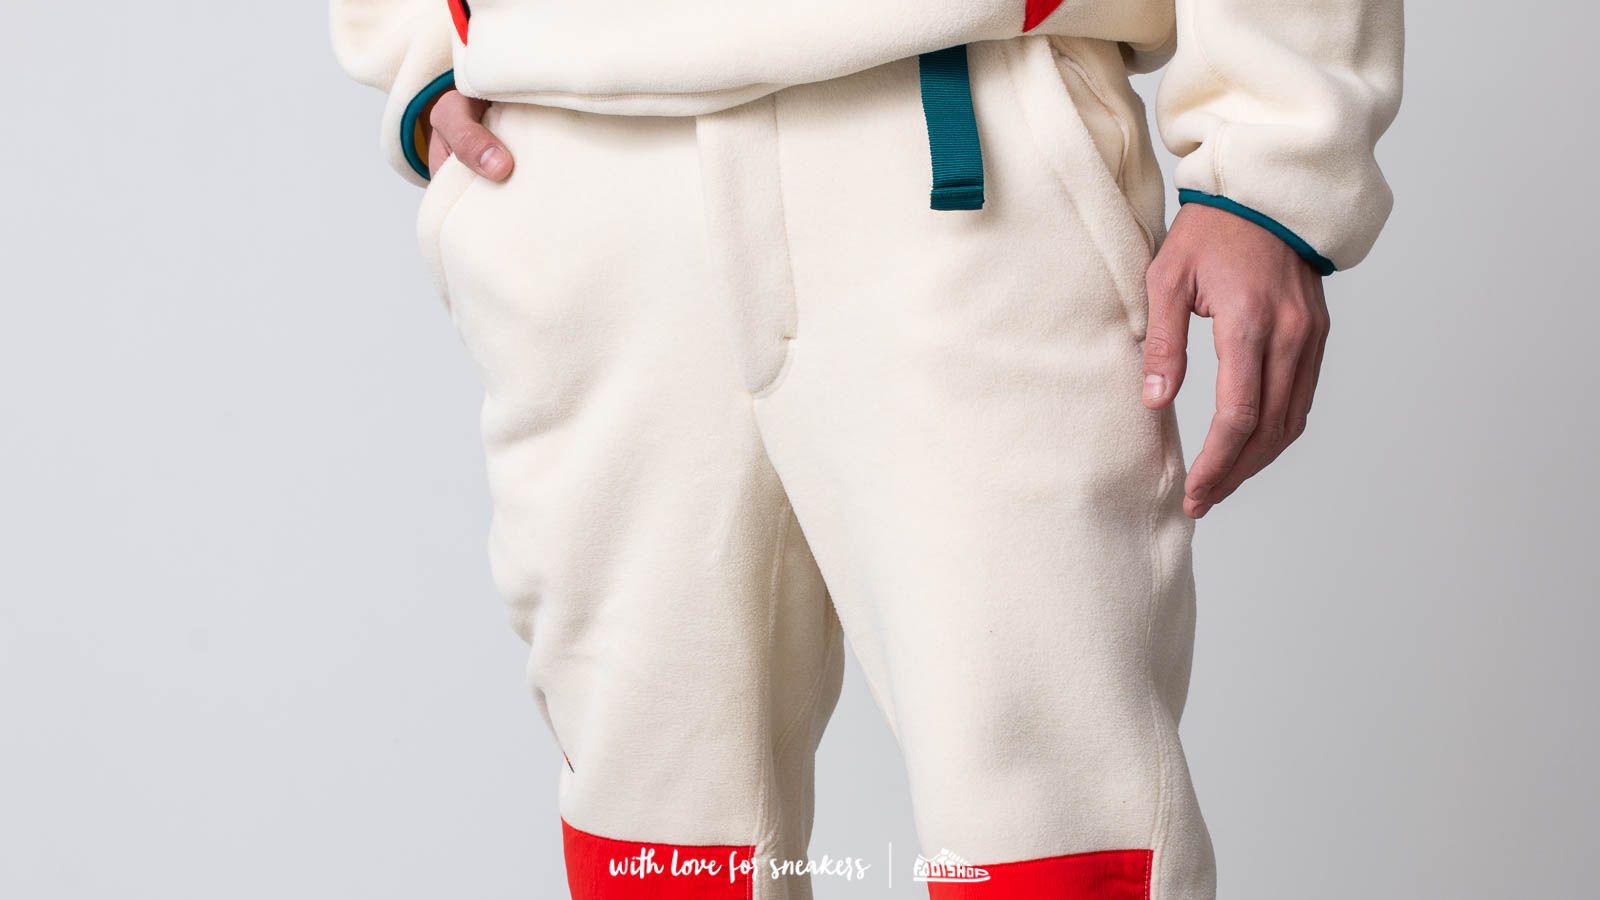 Nike Acg Sherpa Fleece Pant for Men | Lyst